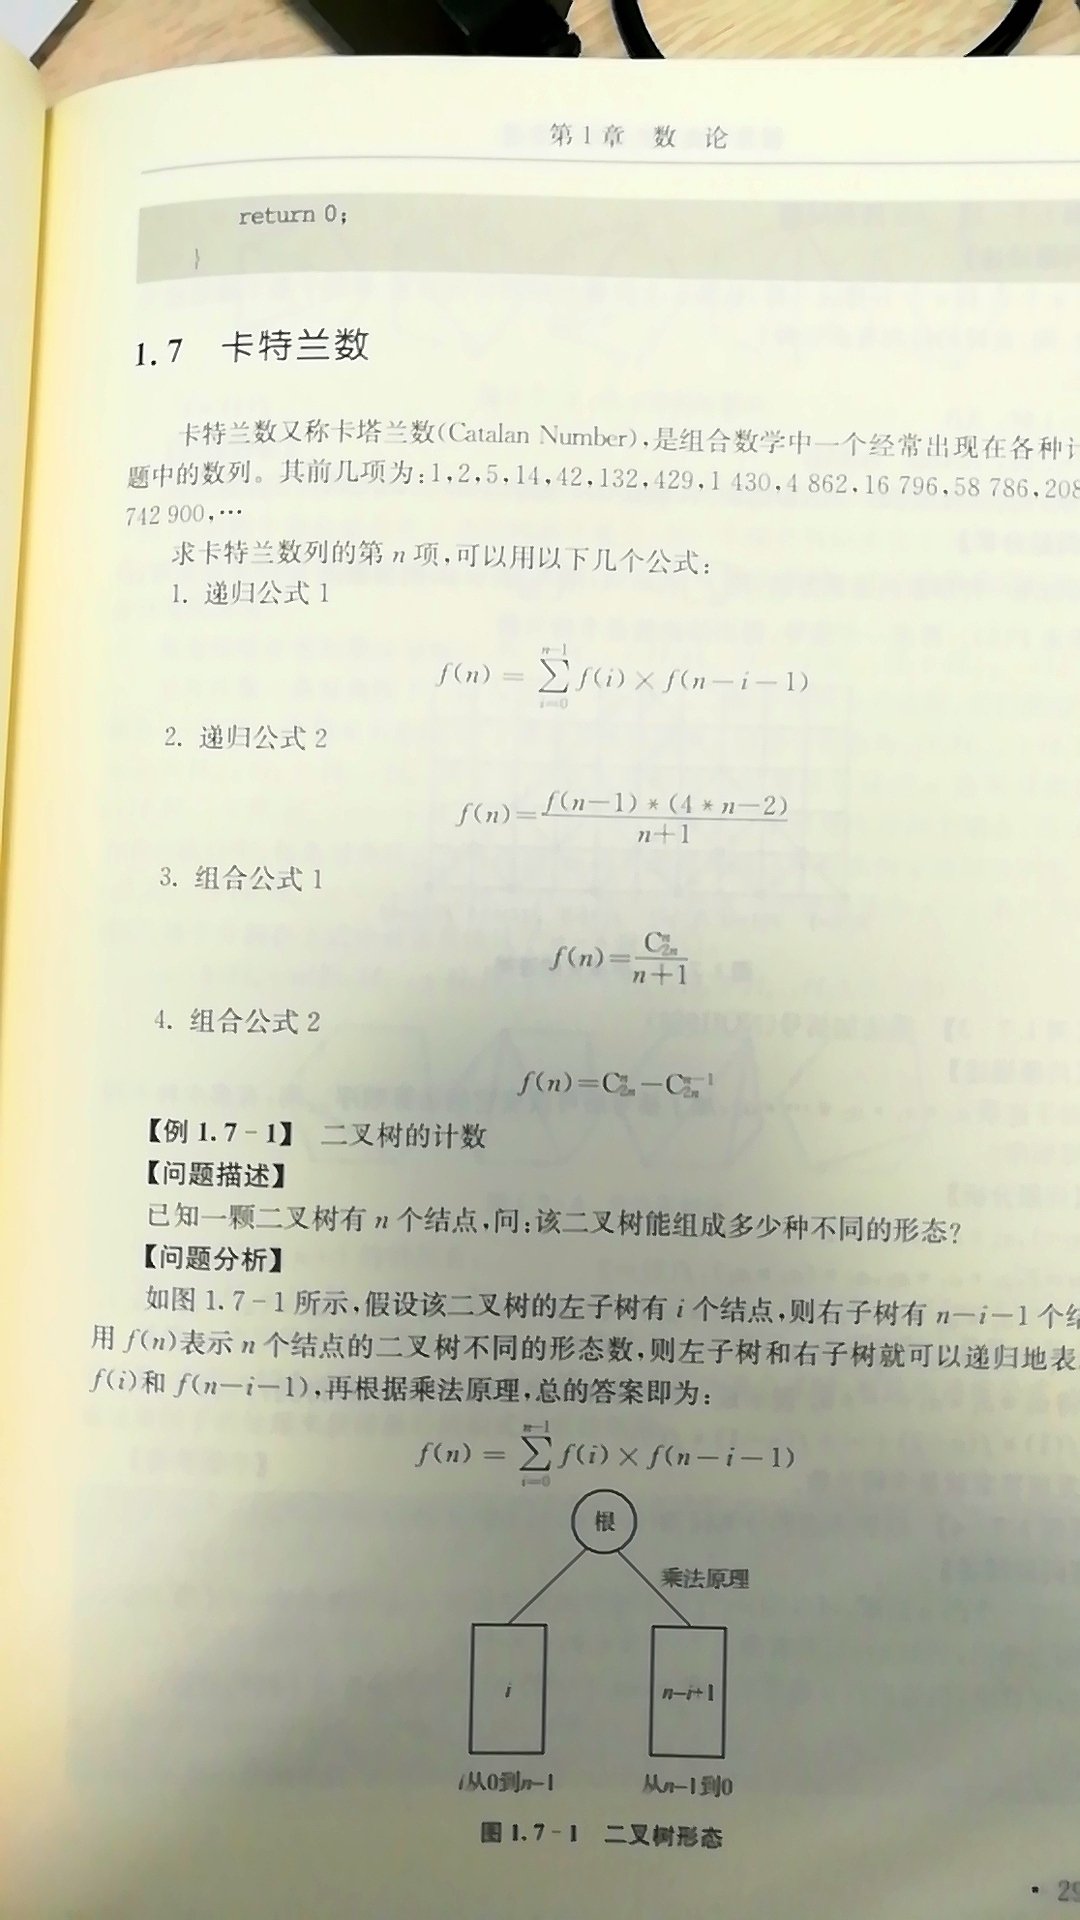 毕竟不是数学书，如果能给出公式推导过程就好了